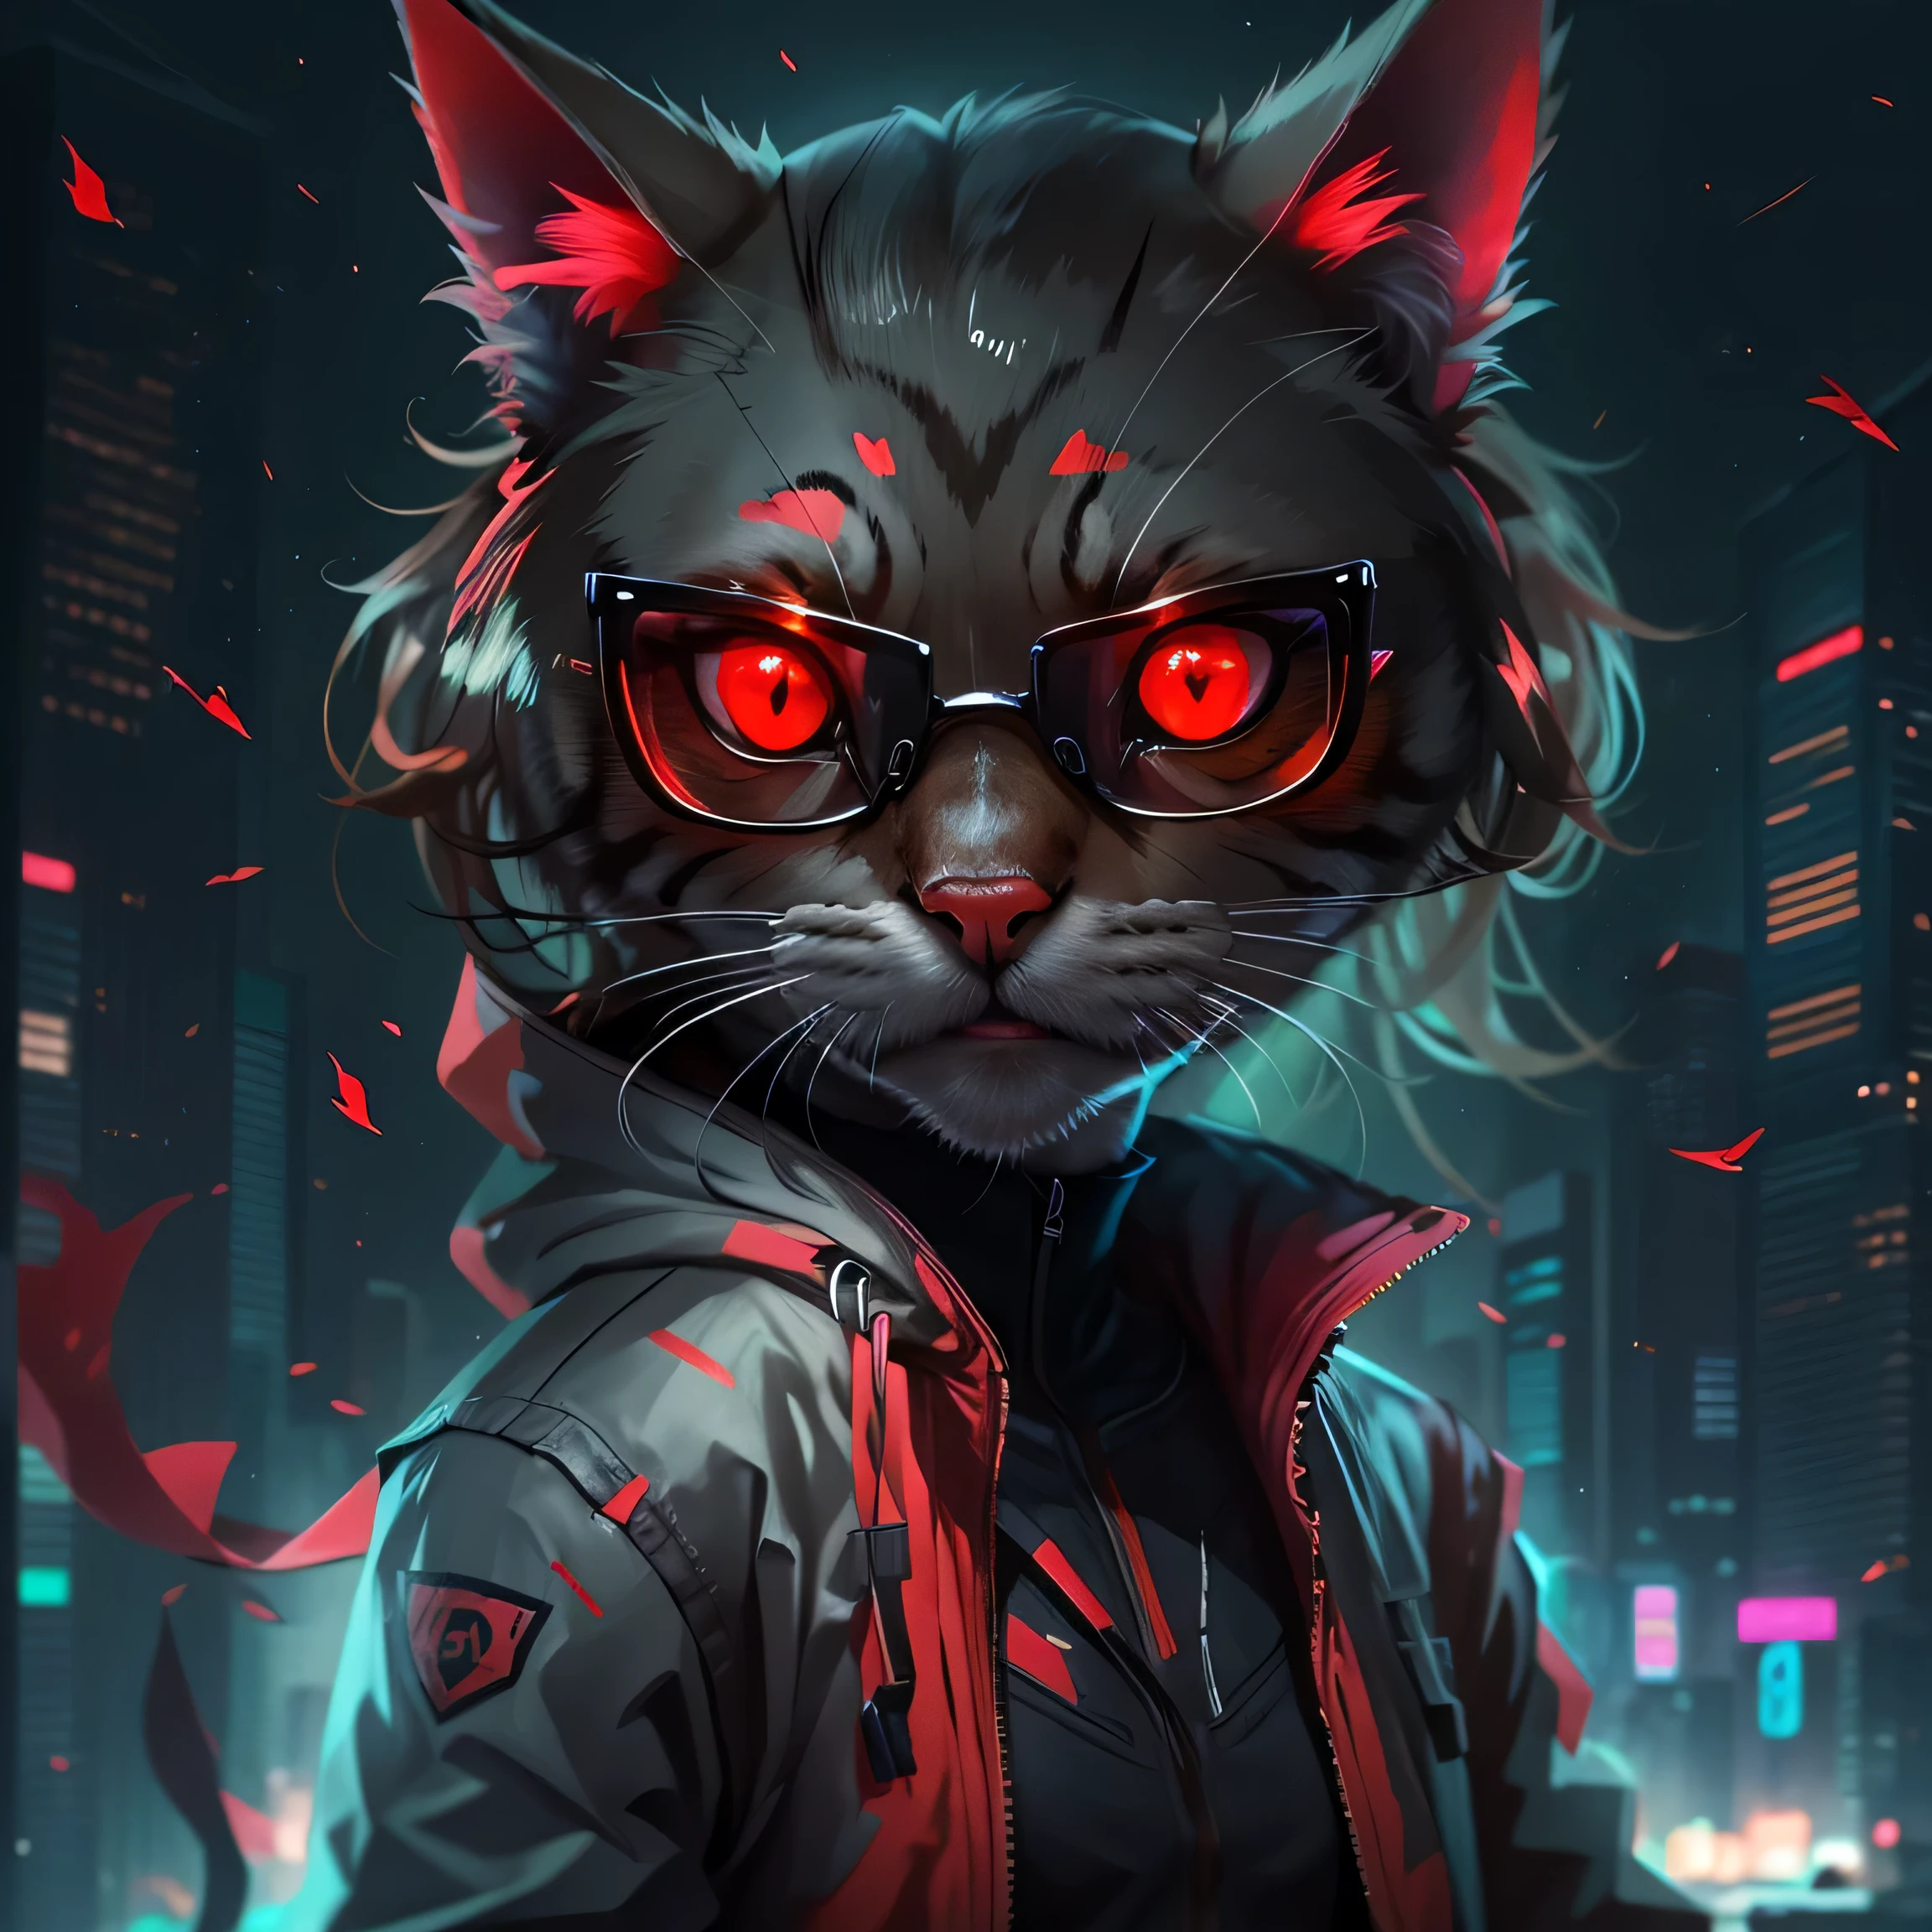 赤いジャケットとメガネをかけた猫がいる., サイバーパンク猫, 赤い目, 赤い目, 赤い目, サイボーグ猫, 赤く光る目, 赤い目, 猫のような真っ赤な目, アサシンキャット, bright 赤い目, 悪魔の猫, fully 赤い目, サイバーキャット, with 赤く光る目, glowing 赤い目, 赤い目